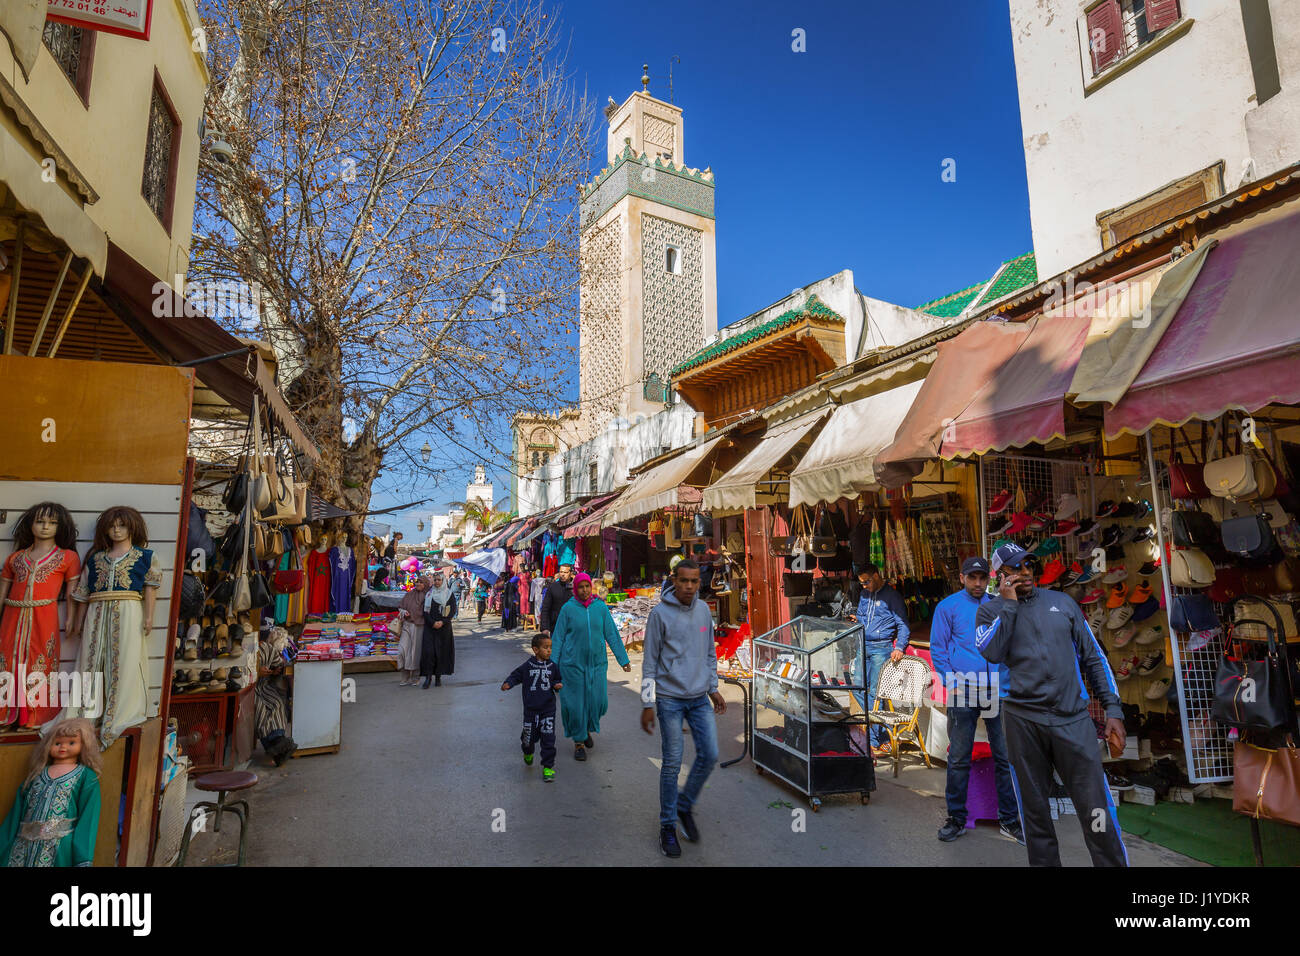 Fes, Maroc - mars 01, 2017 : la mosquée en arrière-plan de l'animation dans la rue de la vieille ville de Fès, Maroc Banque D'Images